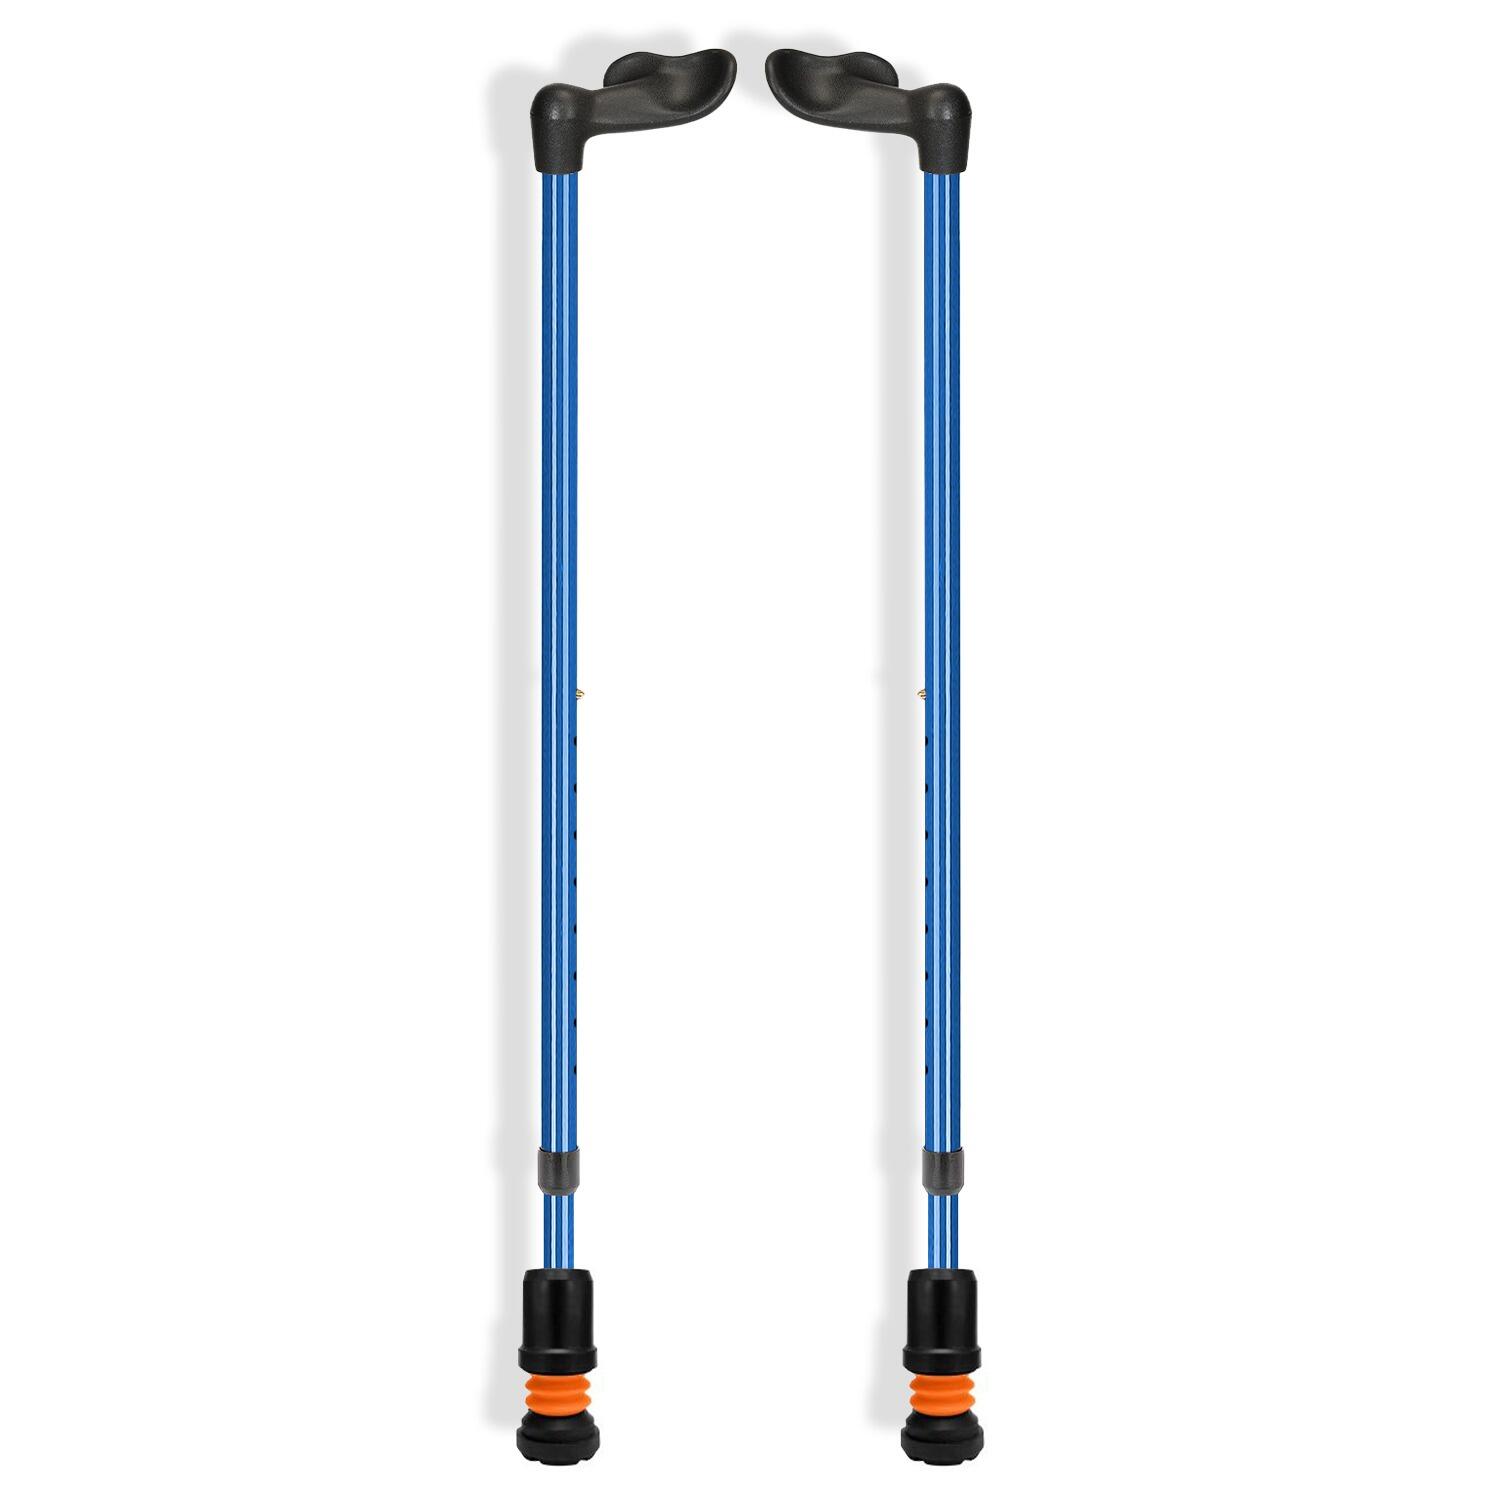 Ergonomic Fischer Handle Lightweight Height Adjustable Walking Stick - Tall